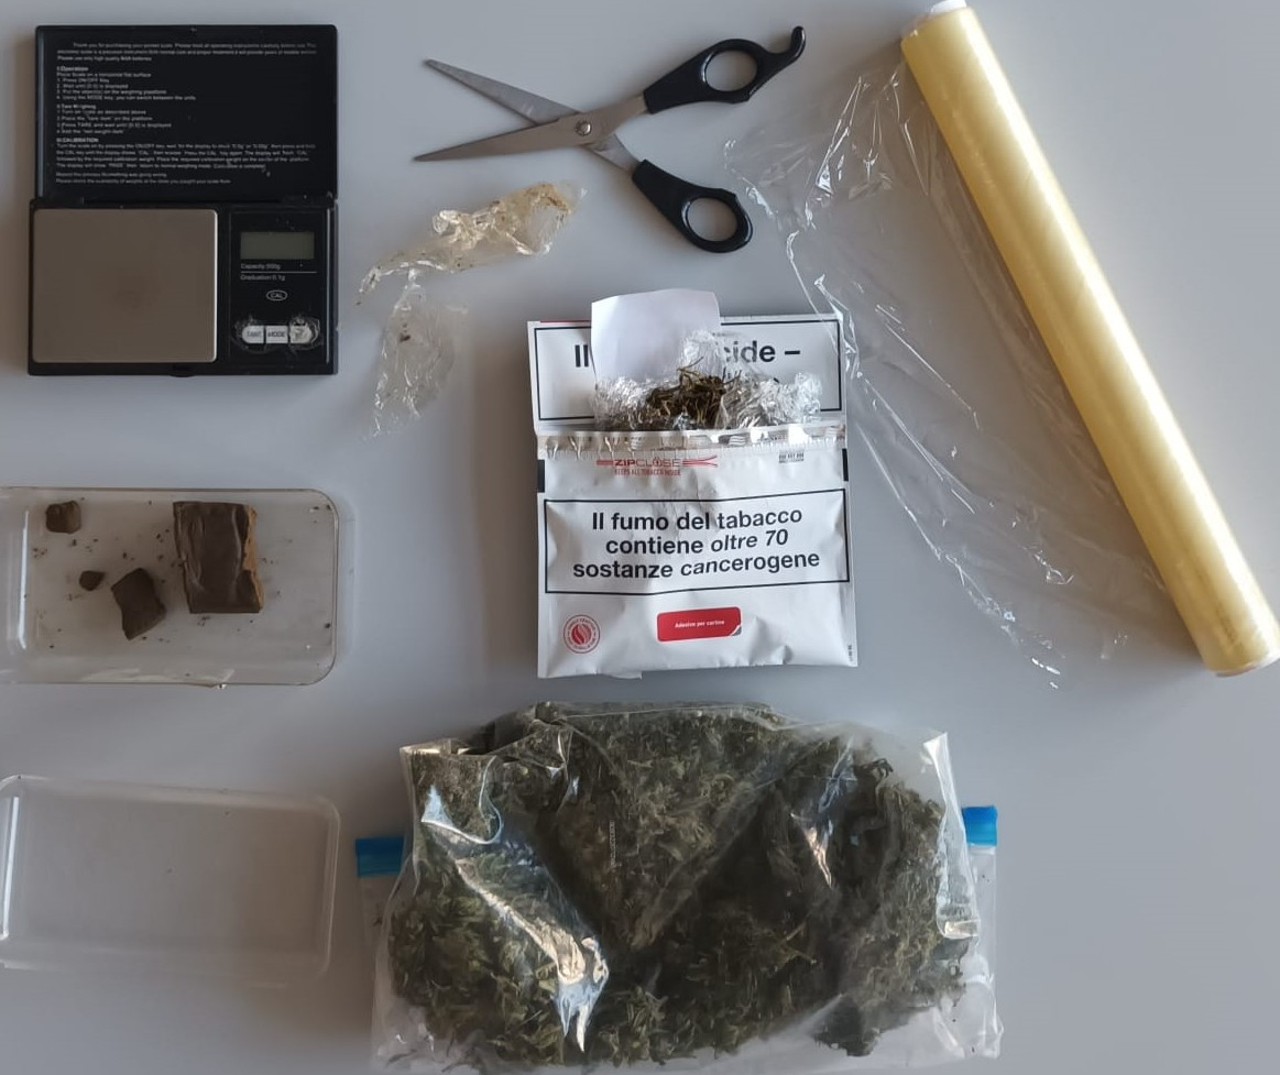 La droga e i materiali sequestrati dalla Polizia di Senigallia